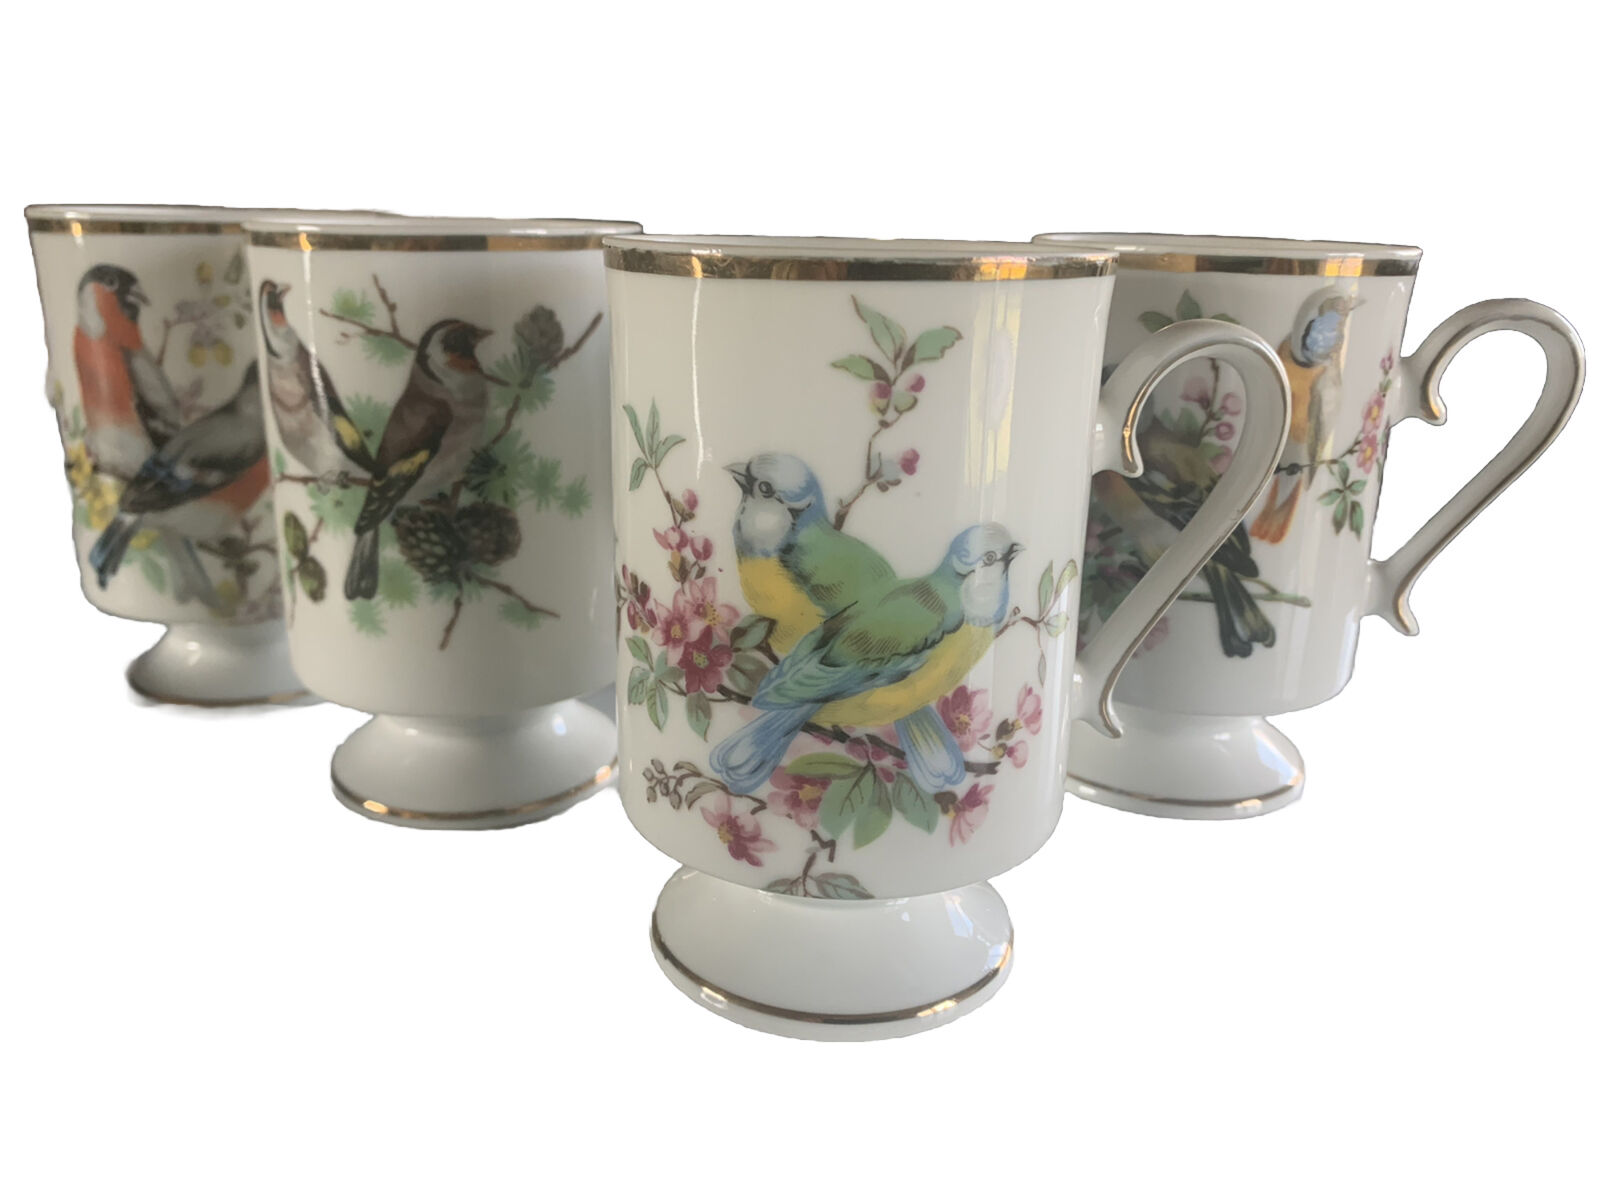 Set of 4 Vtg ROYAL CROWN Cups Pedestal Porcelain Colorful BIRDS Gold Trim